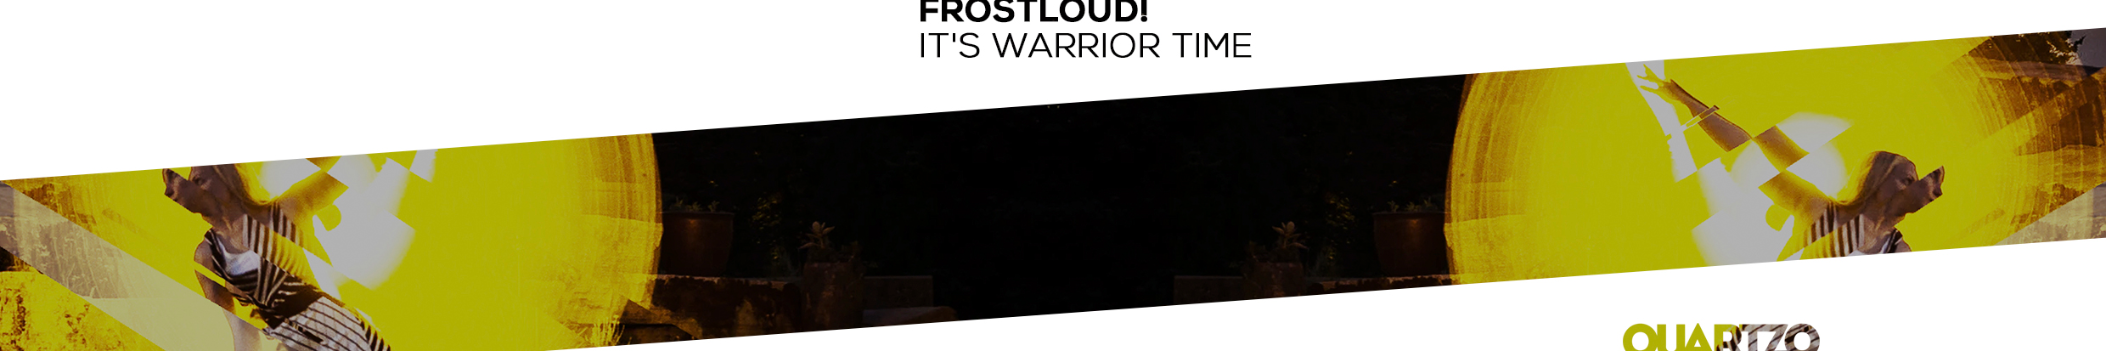 Frostloud!